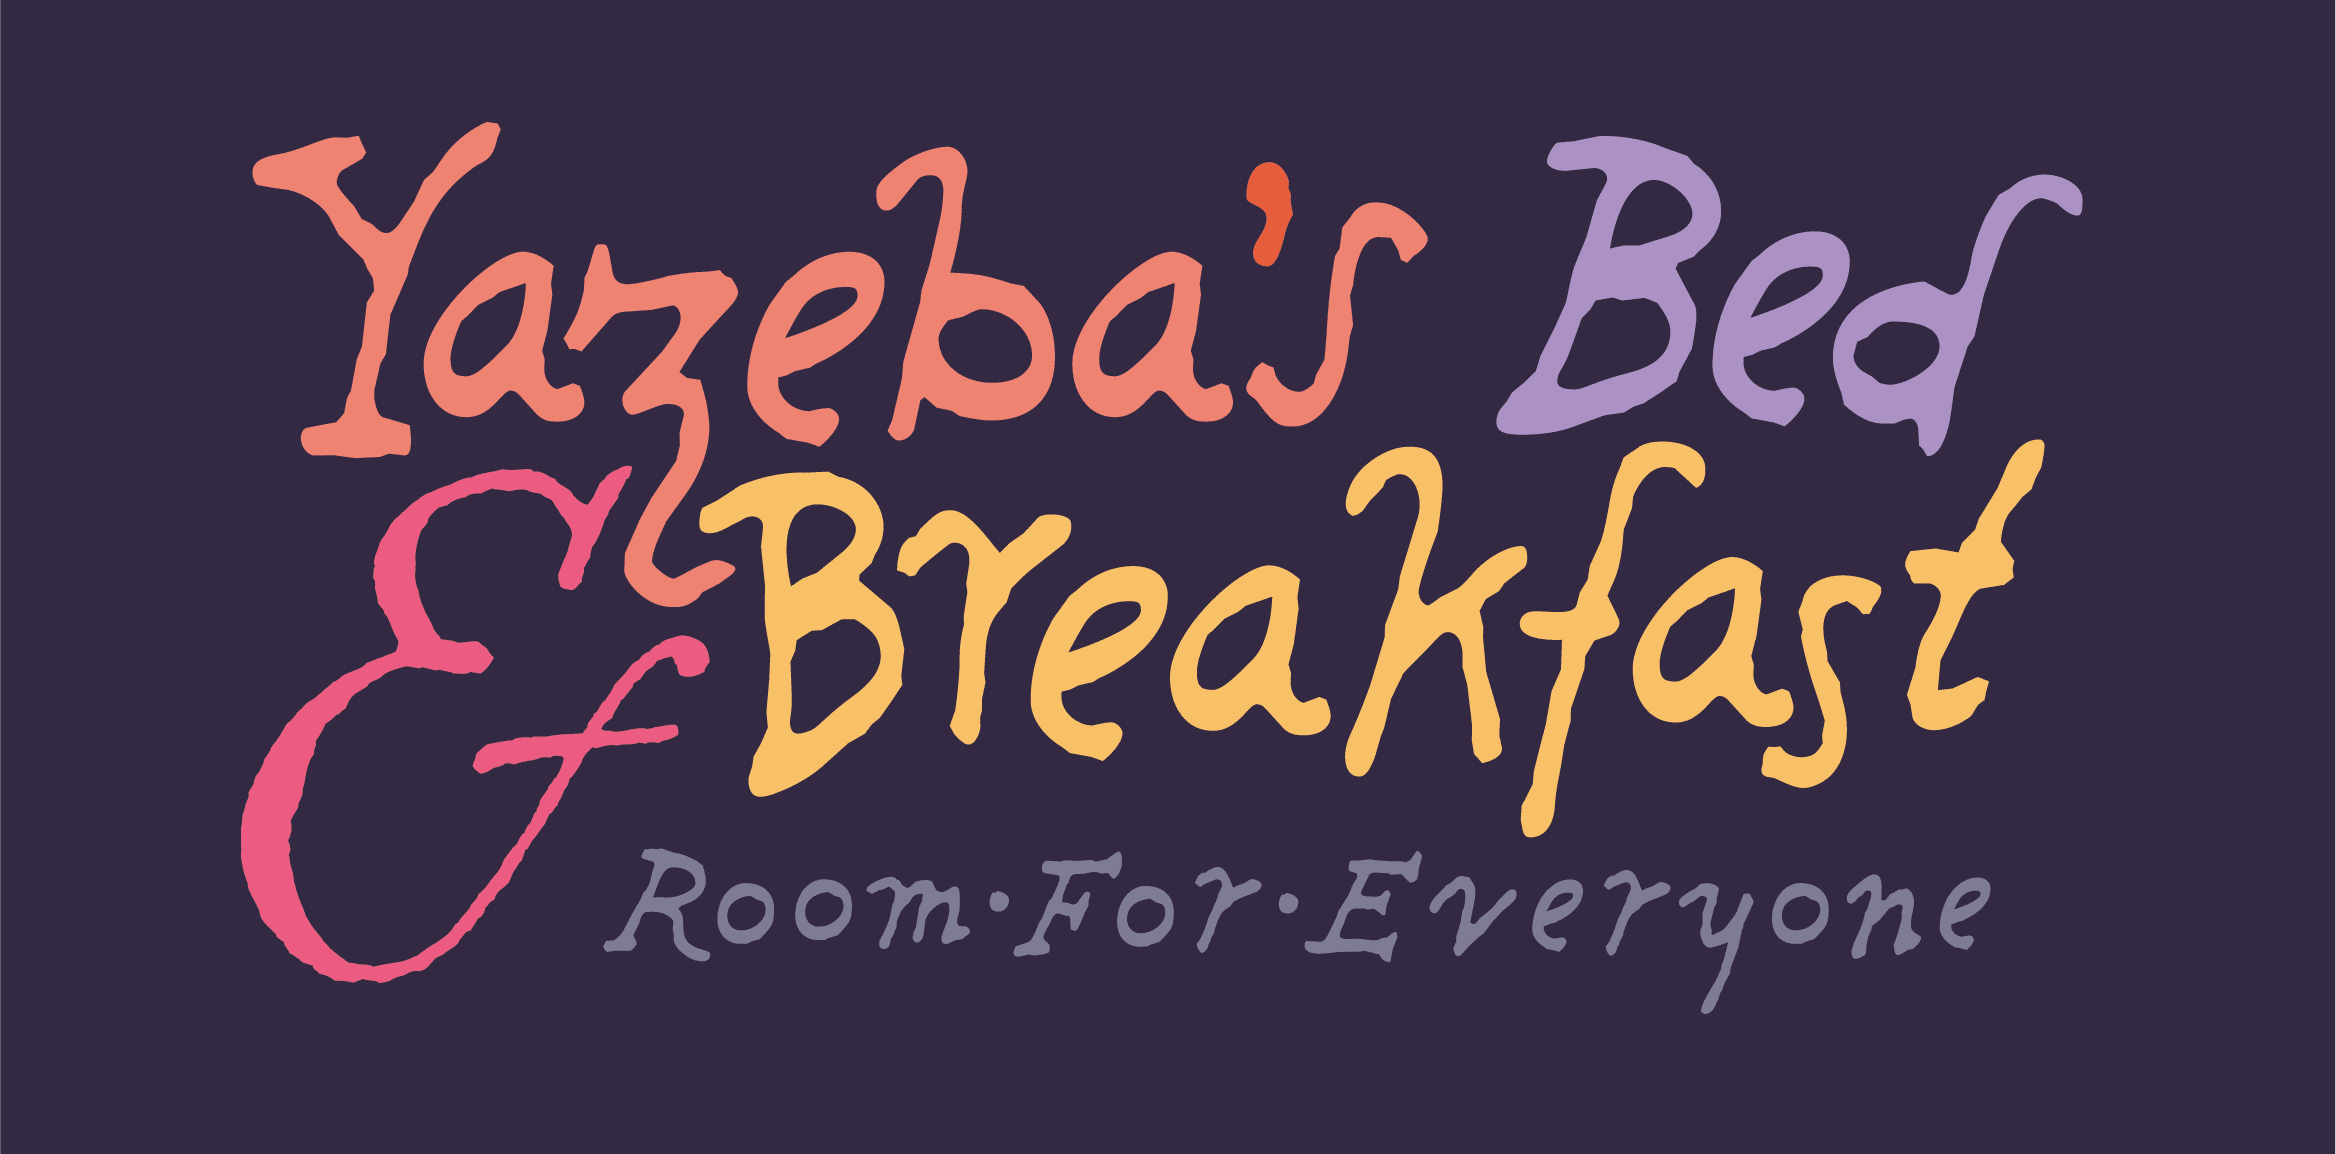 Yazeba's Bed & Breakfast logo